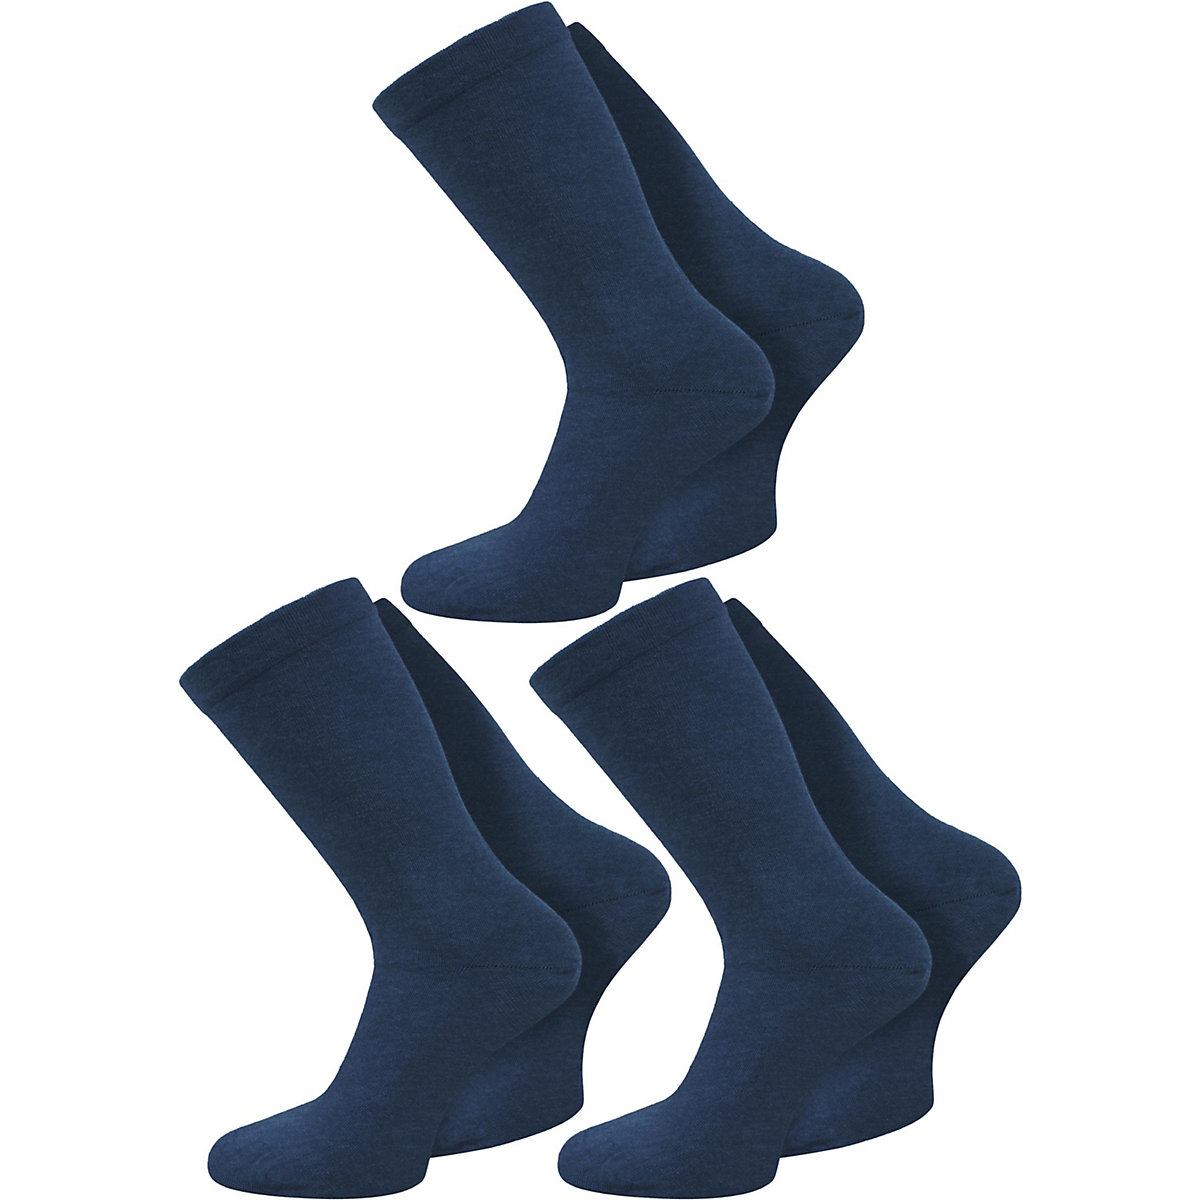 normani® 3 Paar Gesundheitssocken mit Komfortbund Socken marine